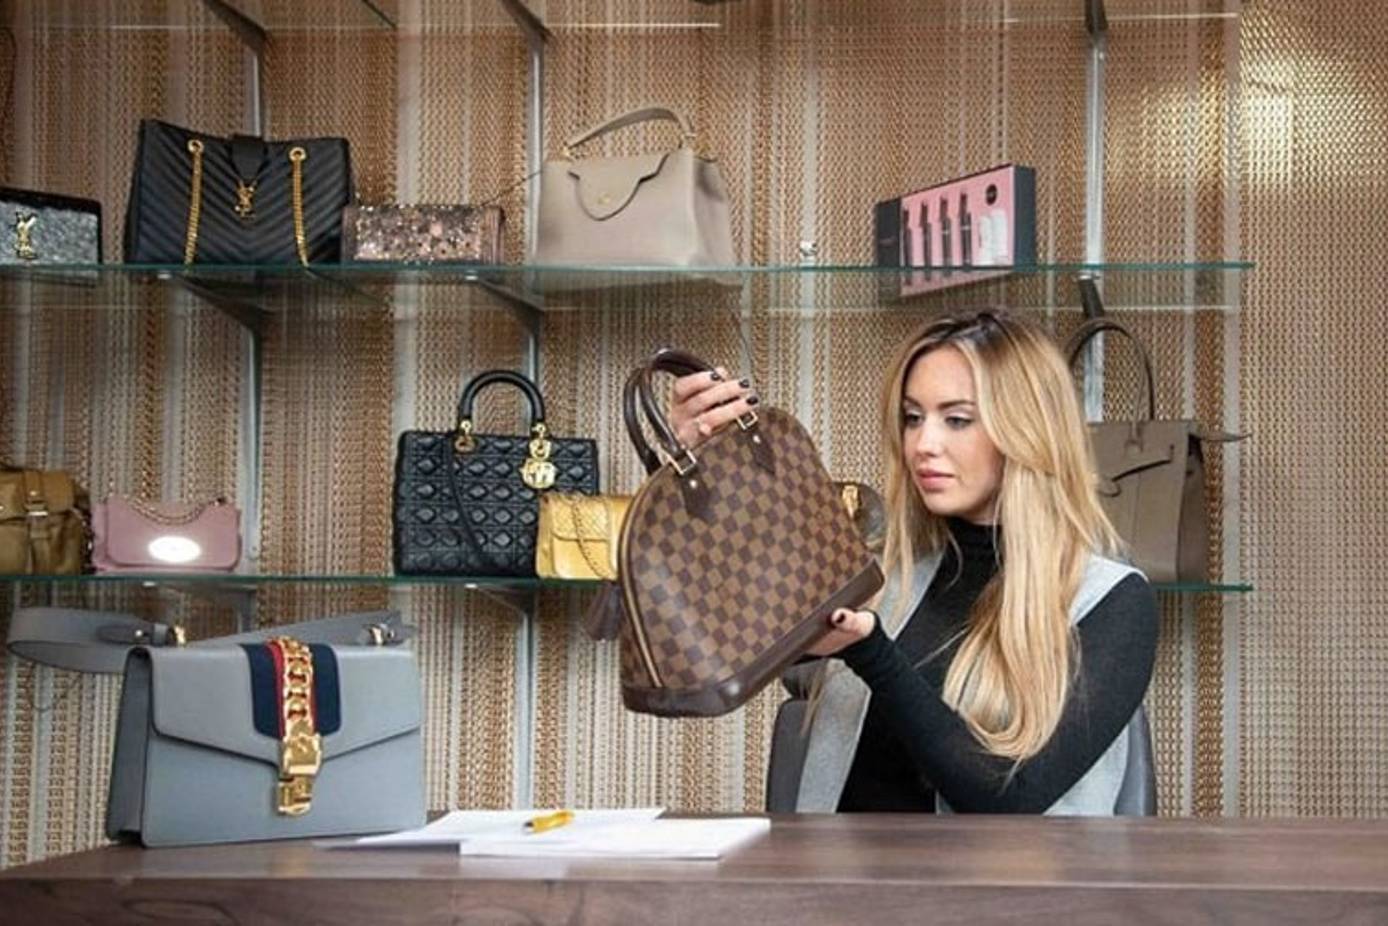 Louis Vuitton and more. - Handbag Clinic & Boutique